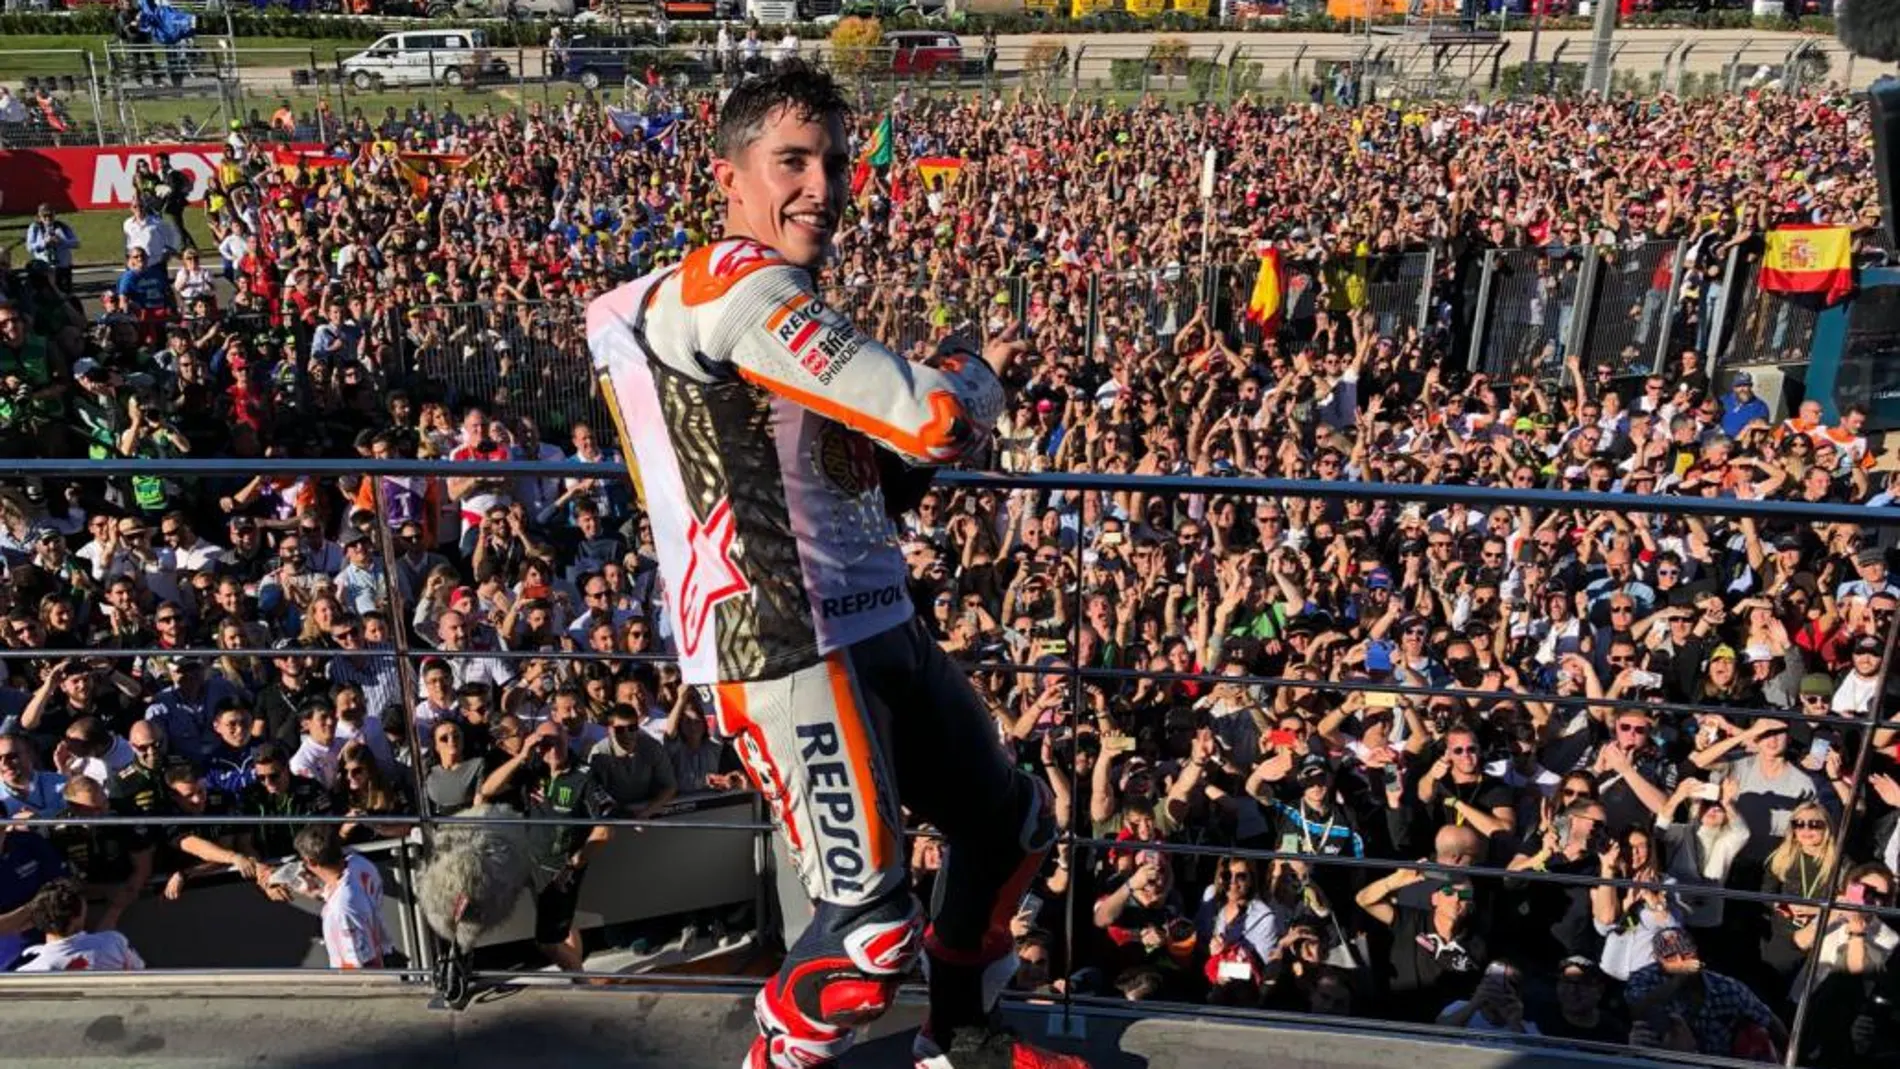 El Campeonato del Mundo de Márquez, en imágenes